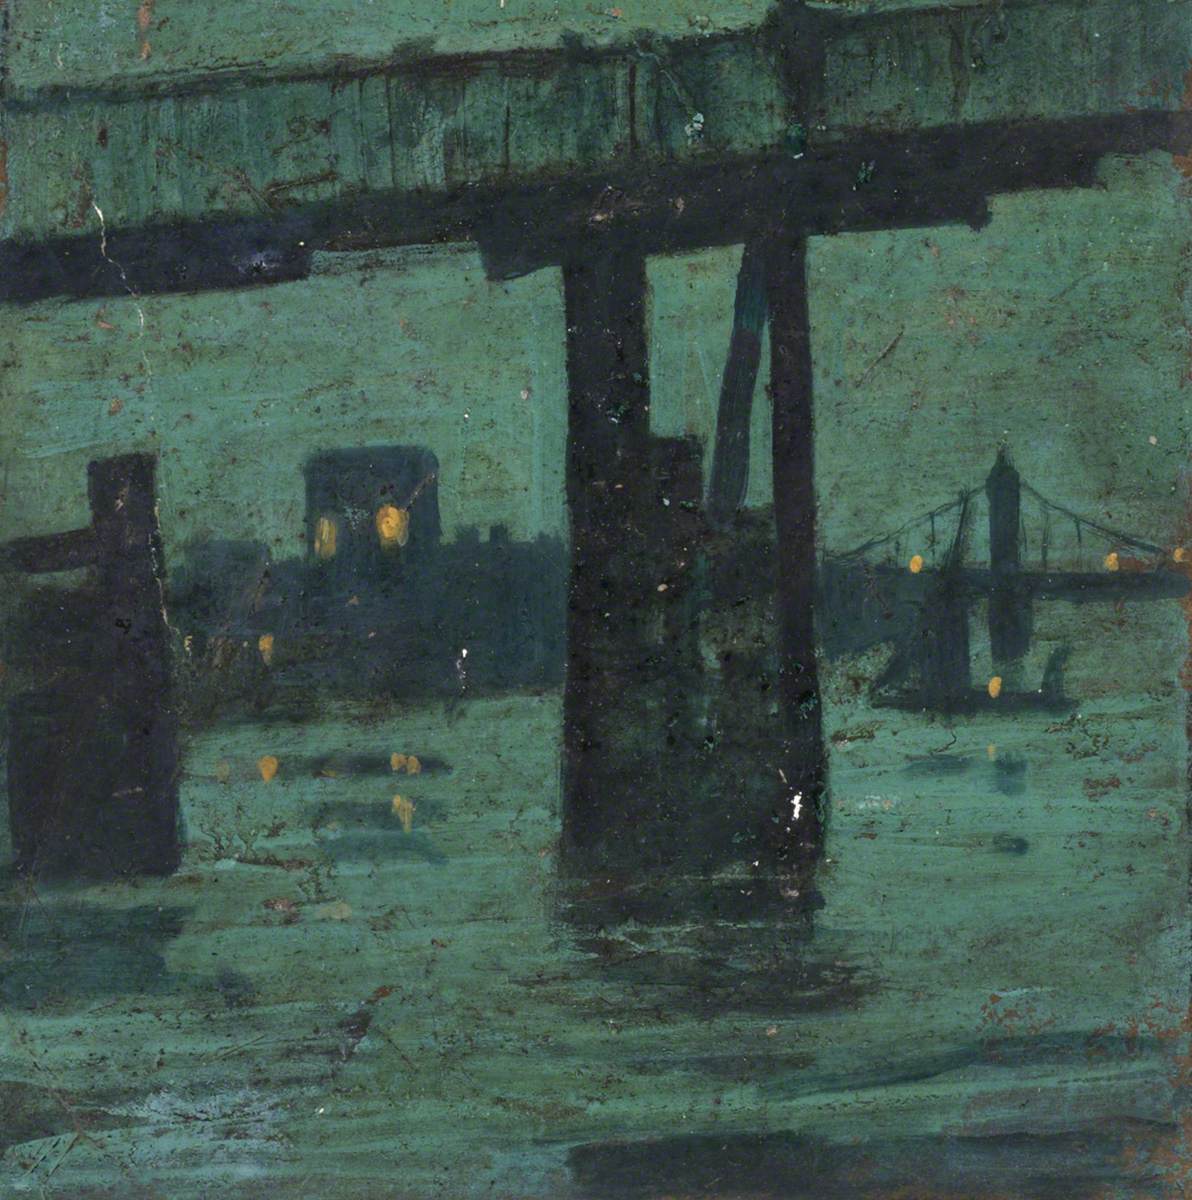 Old Battersea Bridge by Night